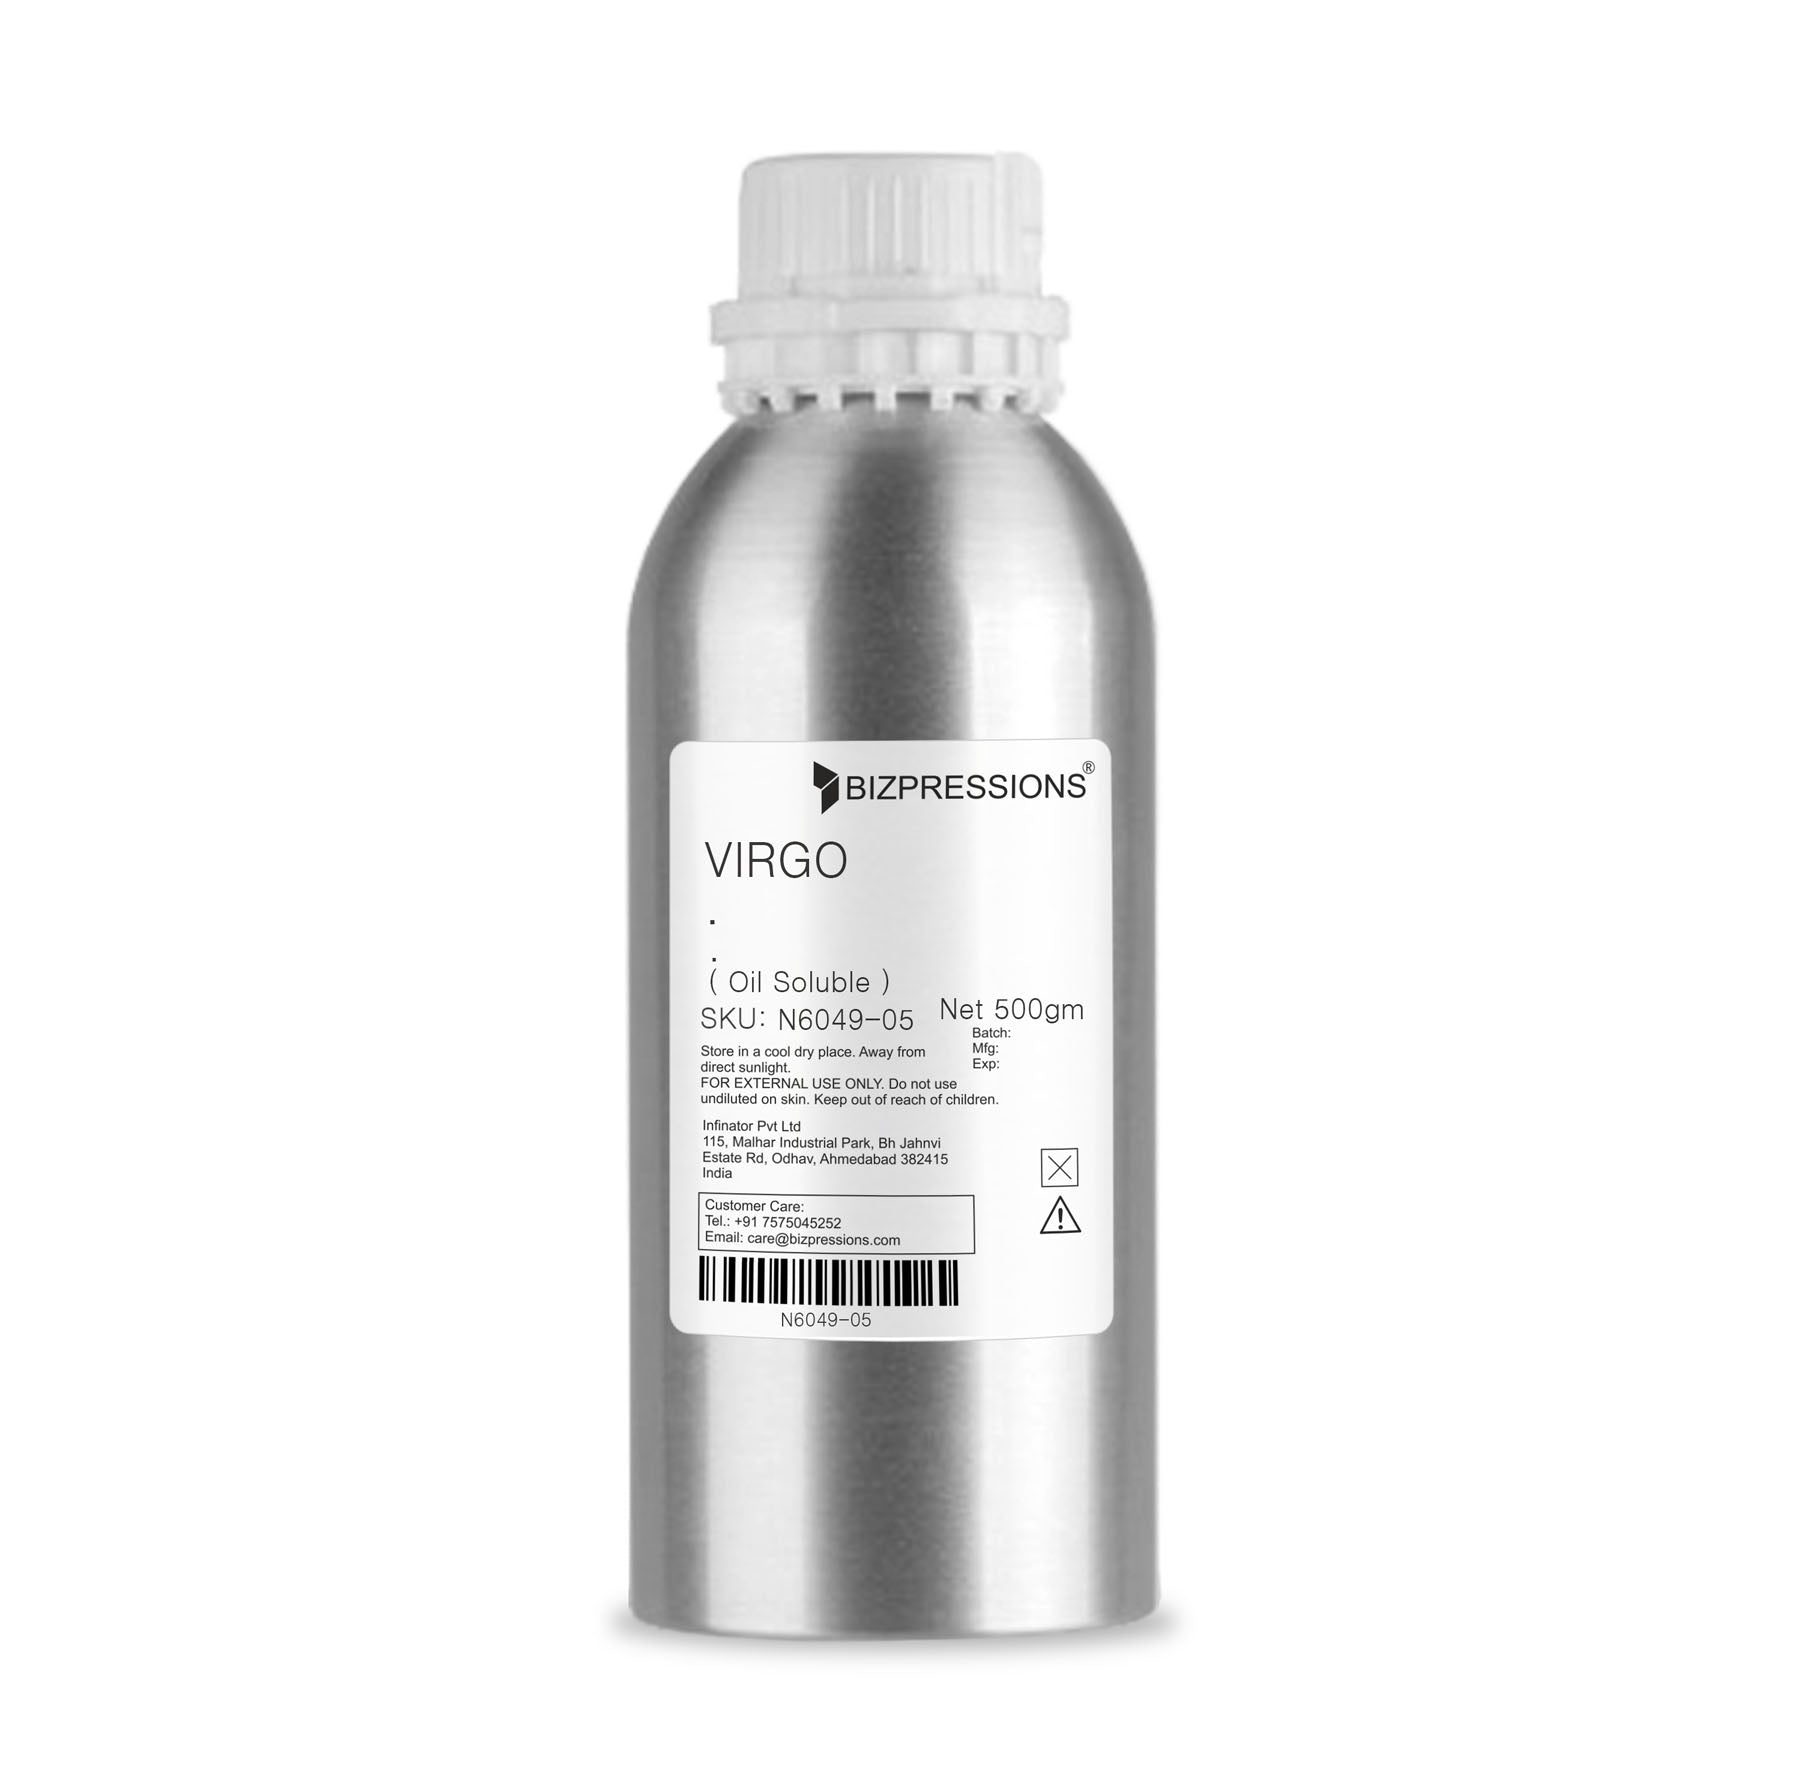 VIRGO - Fragrance ( Oil Soluble ) - 500 gm